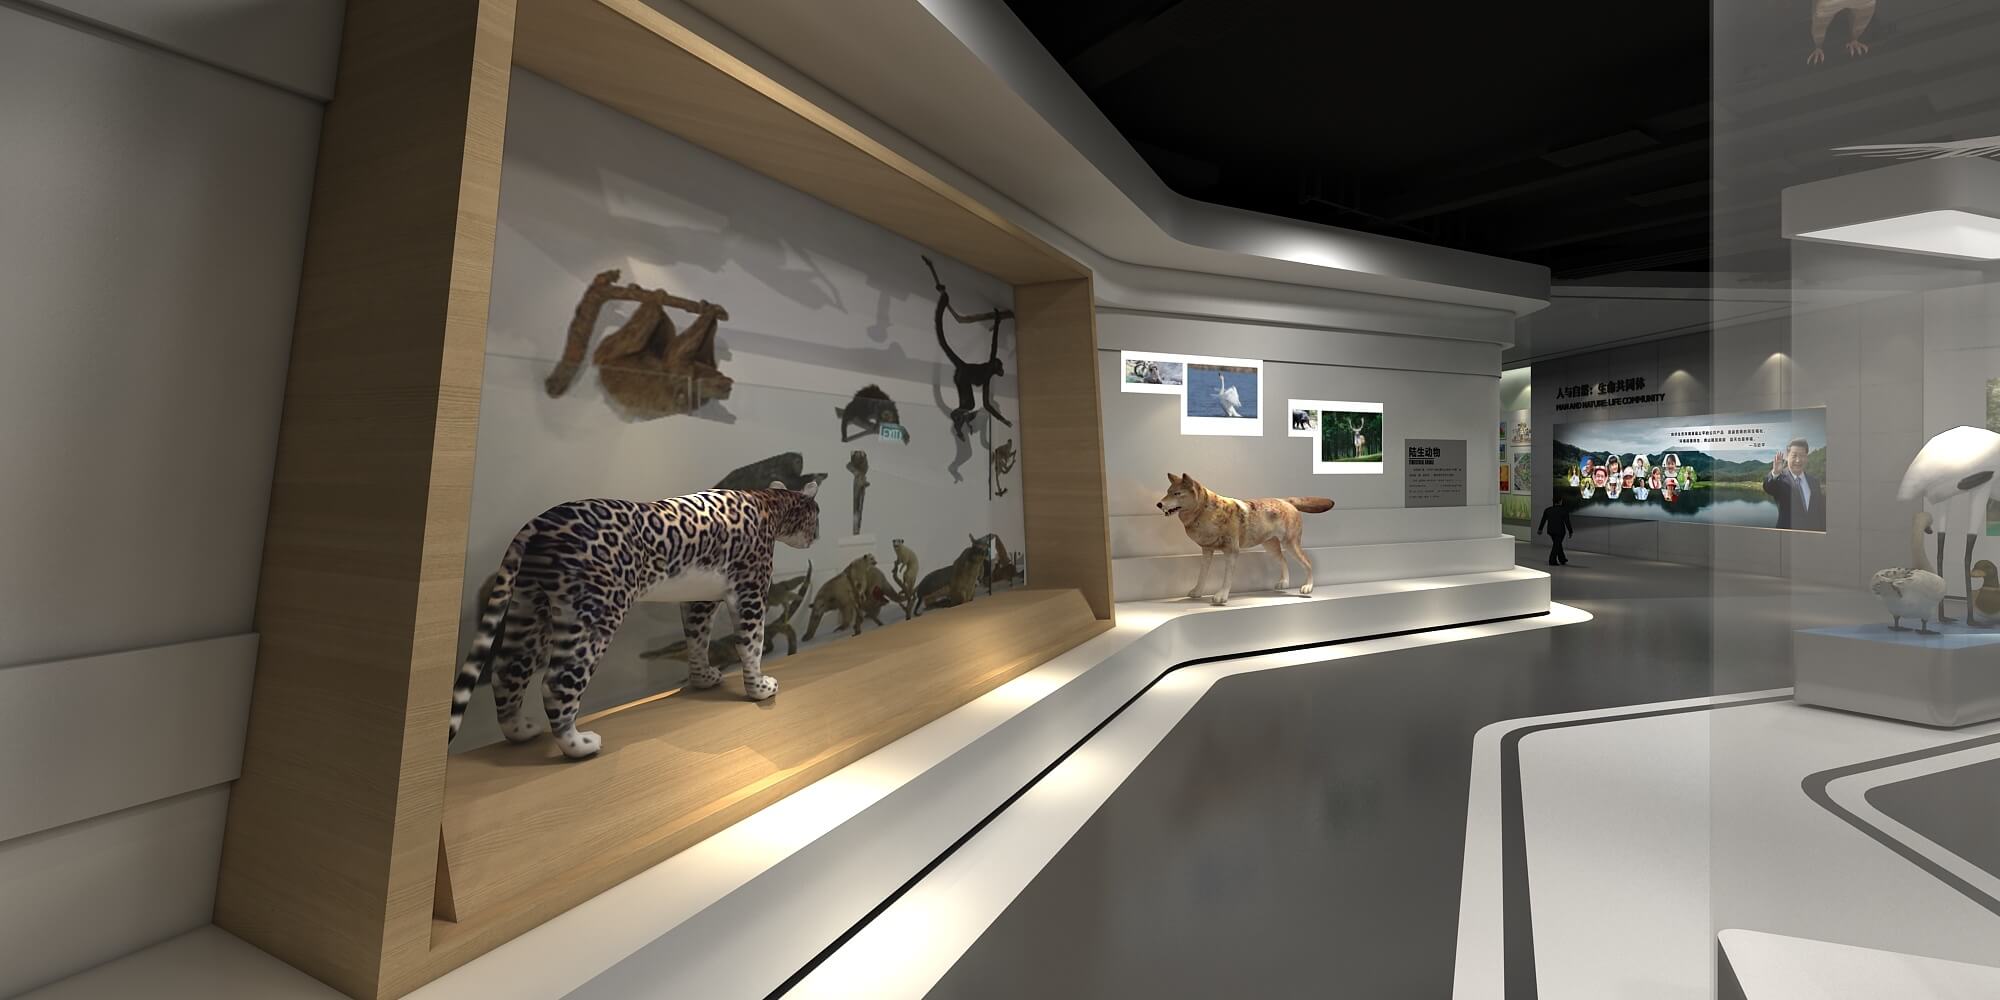 这是一个现代博物馆展览空间，展示了动物模型和相关图片，环境设计简洁现代，以教育和展示为目的。